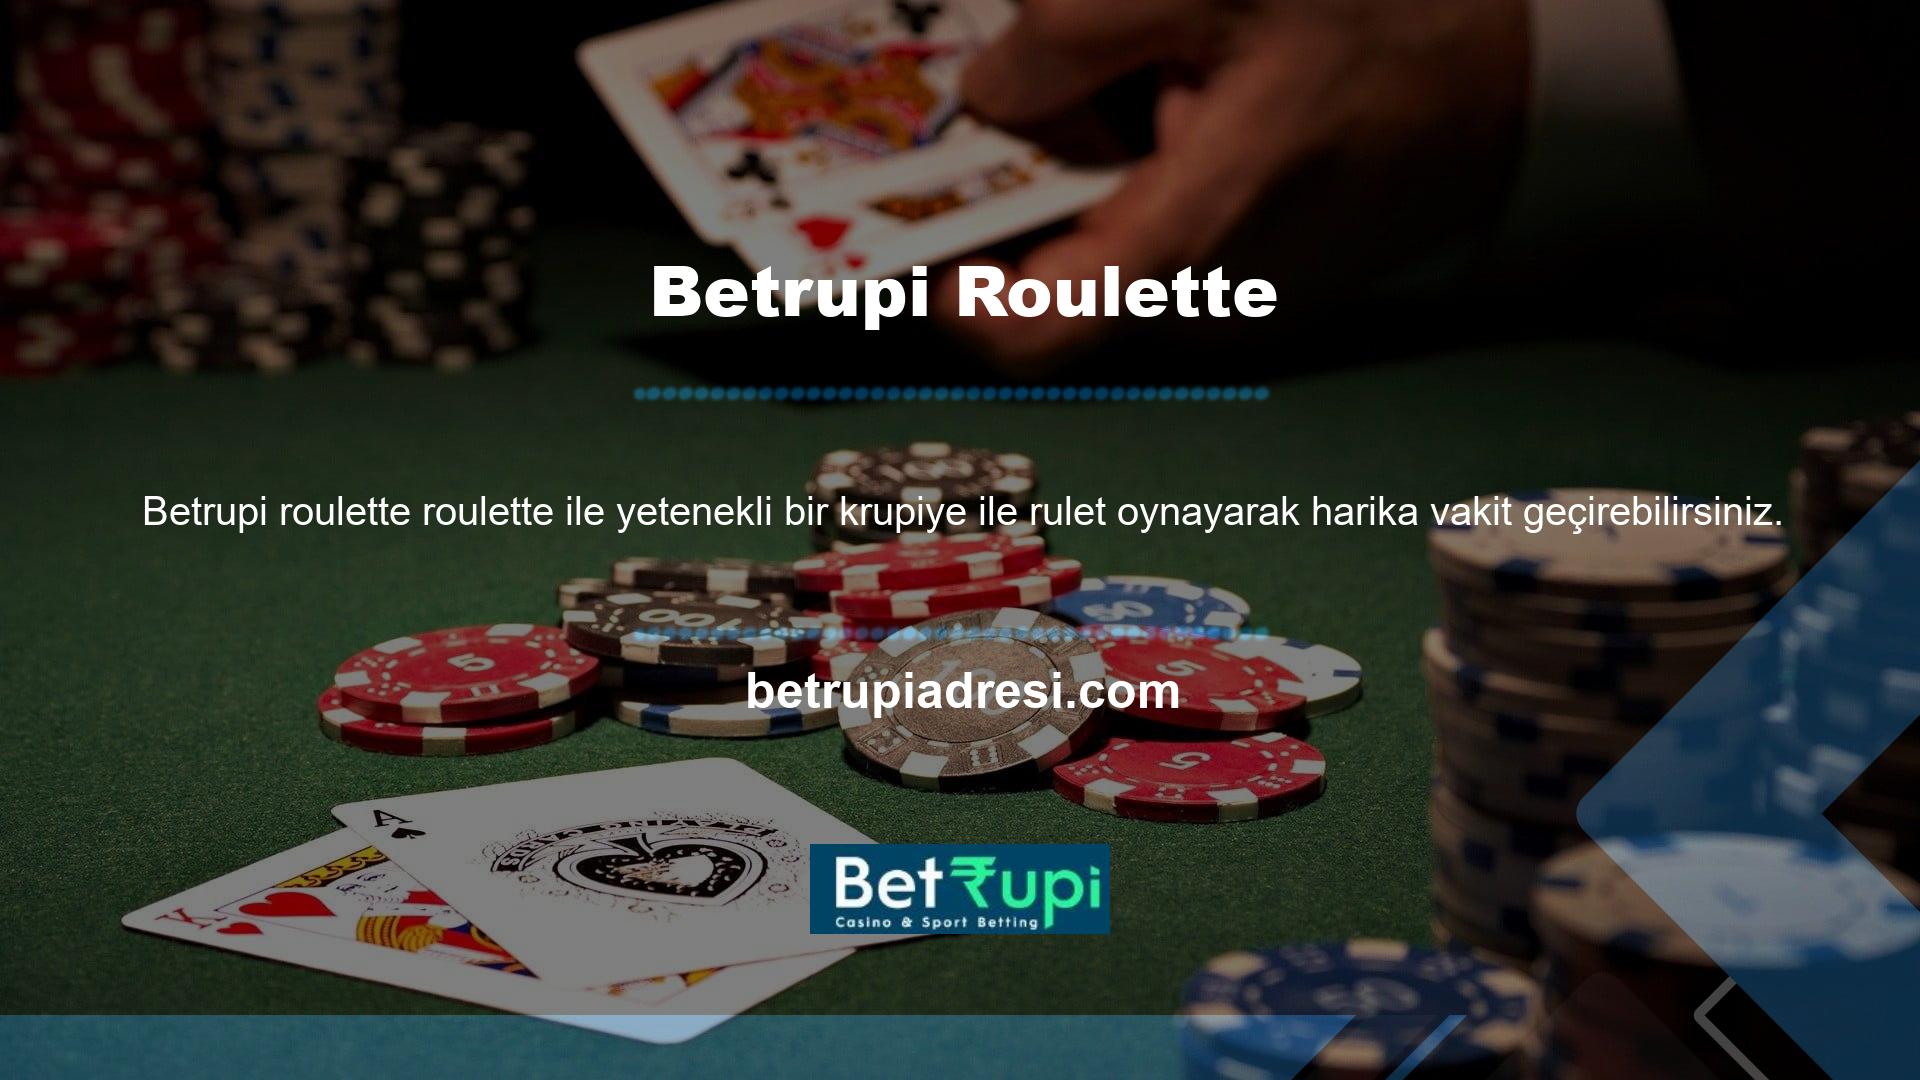 Betrupi canlı rulet masası, üyelerin aynı anda birden fazla oyuncuyla rulet oyununa katılmasını sağlayan bir hizmet sunmaktadır